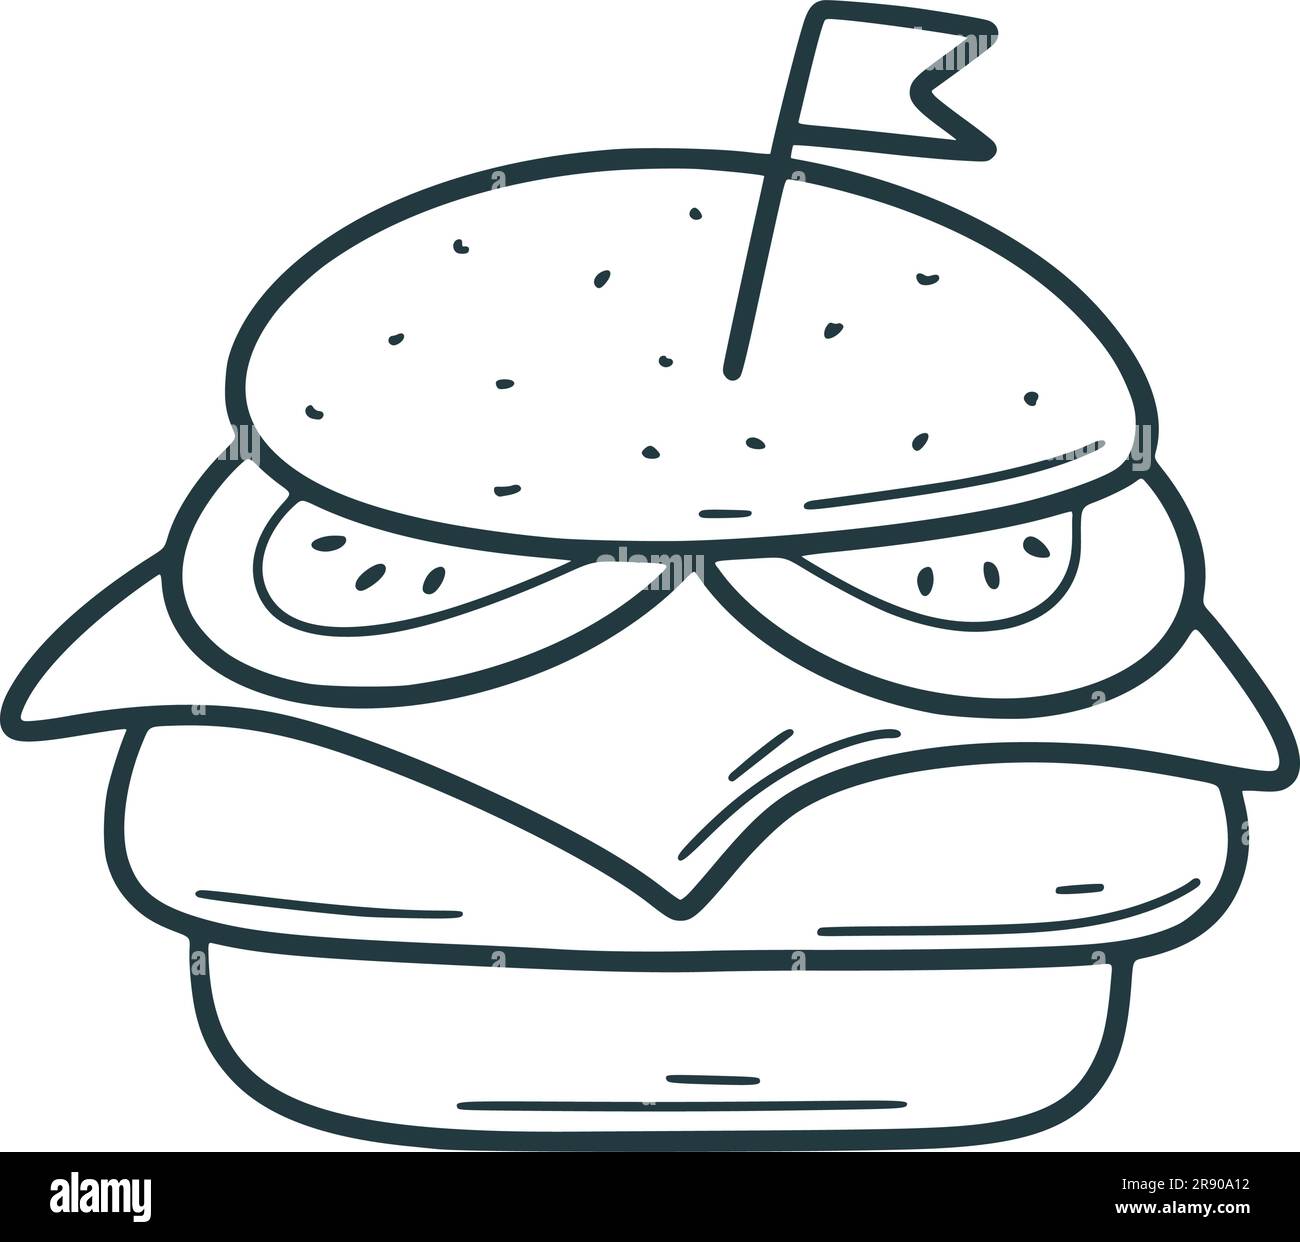 Hamburger disegnato a mano. Panino fast food con cotoletta, formaggio, lattuga e pomodoro, schizzo di doodle all'inchiostro. Hamburger Street food, illustrazione vettoriale isolata Illustrazione Vettoriale